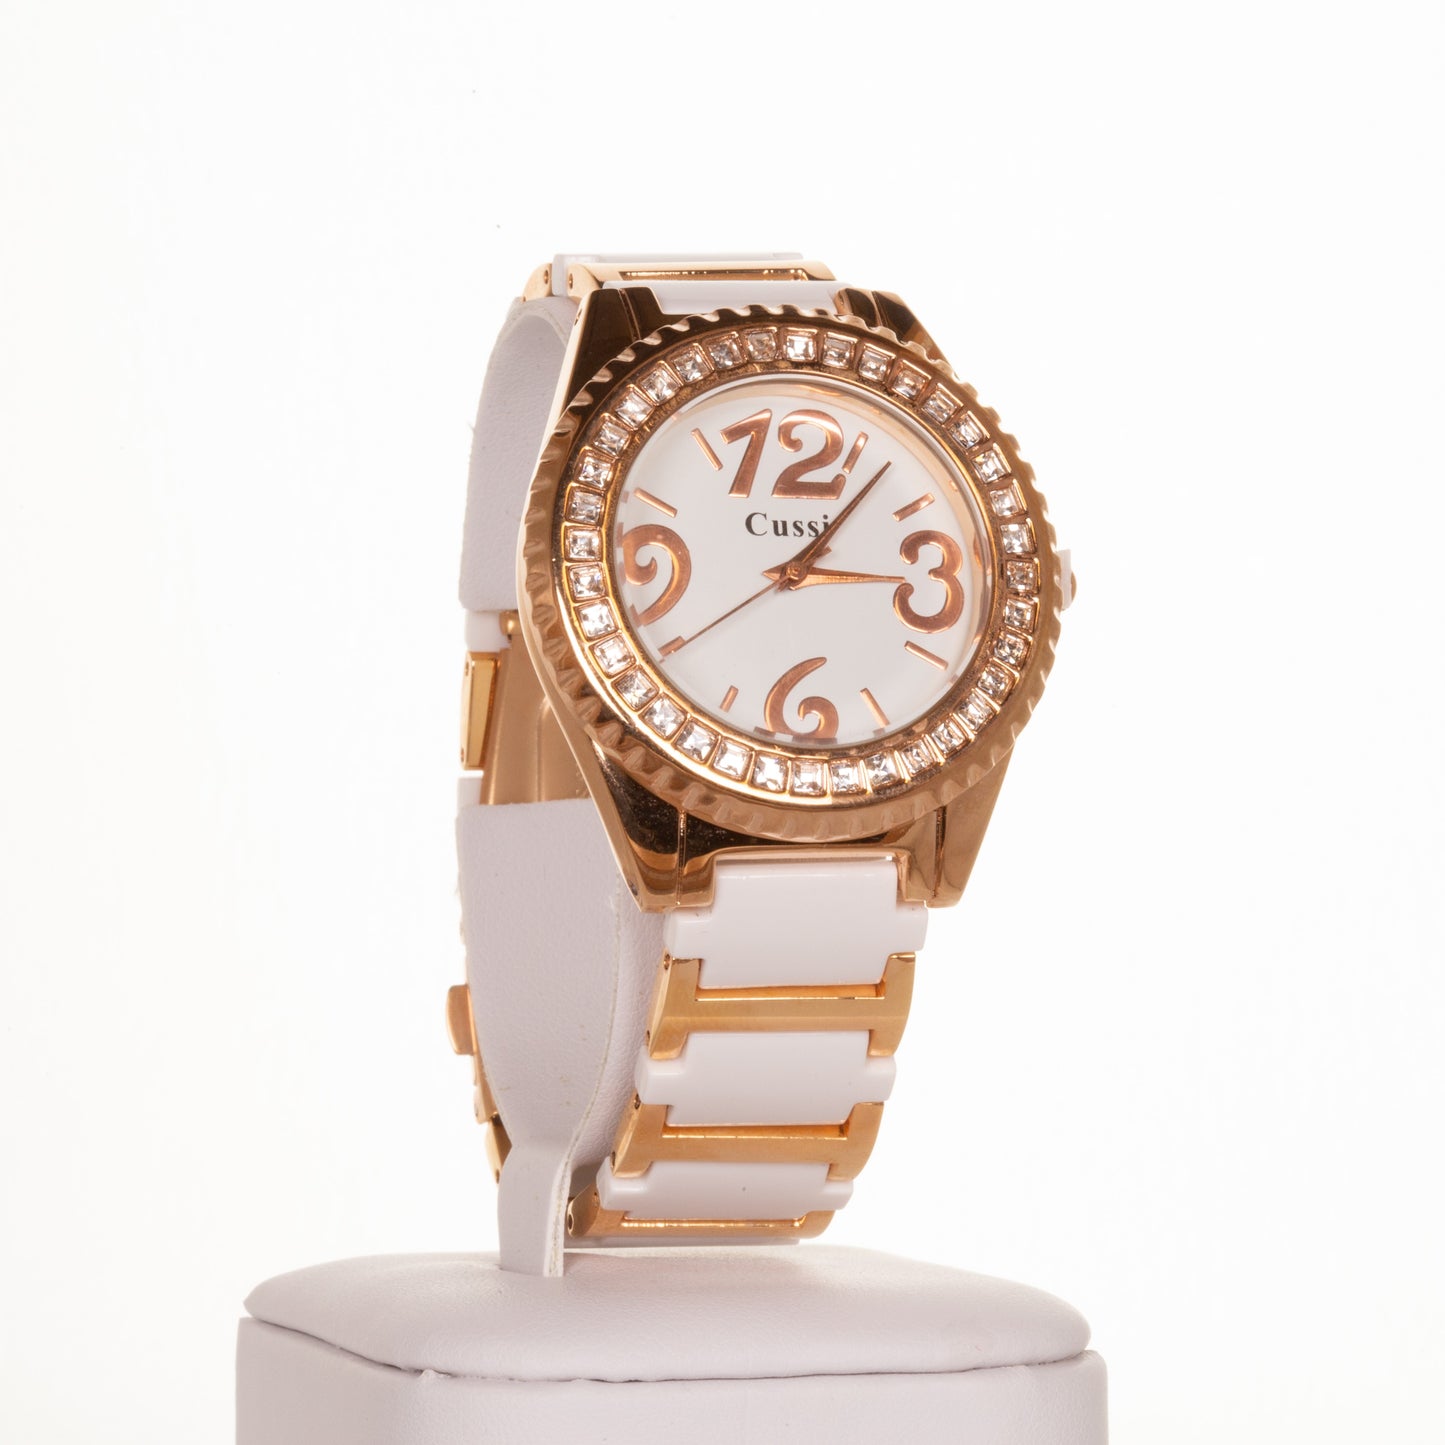 CUSSI dámske hodinky vo farbe ružového zlata s bielym remienkom a kryštálmi kremeňa okolo ciferníka